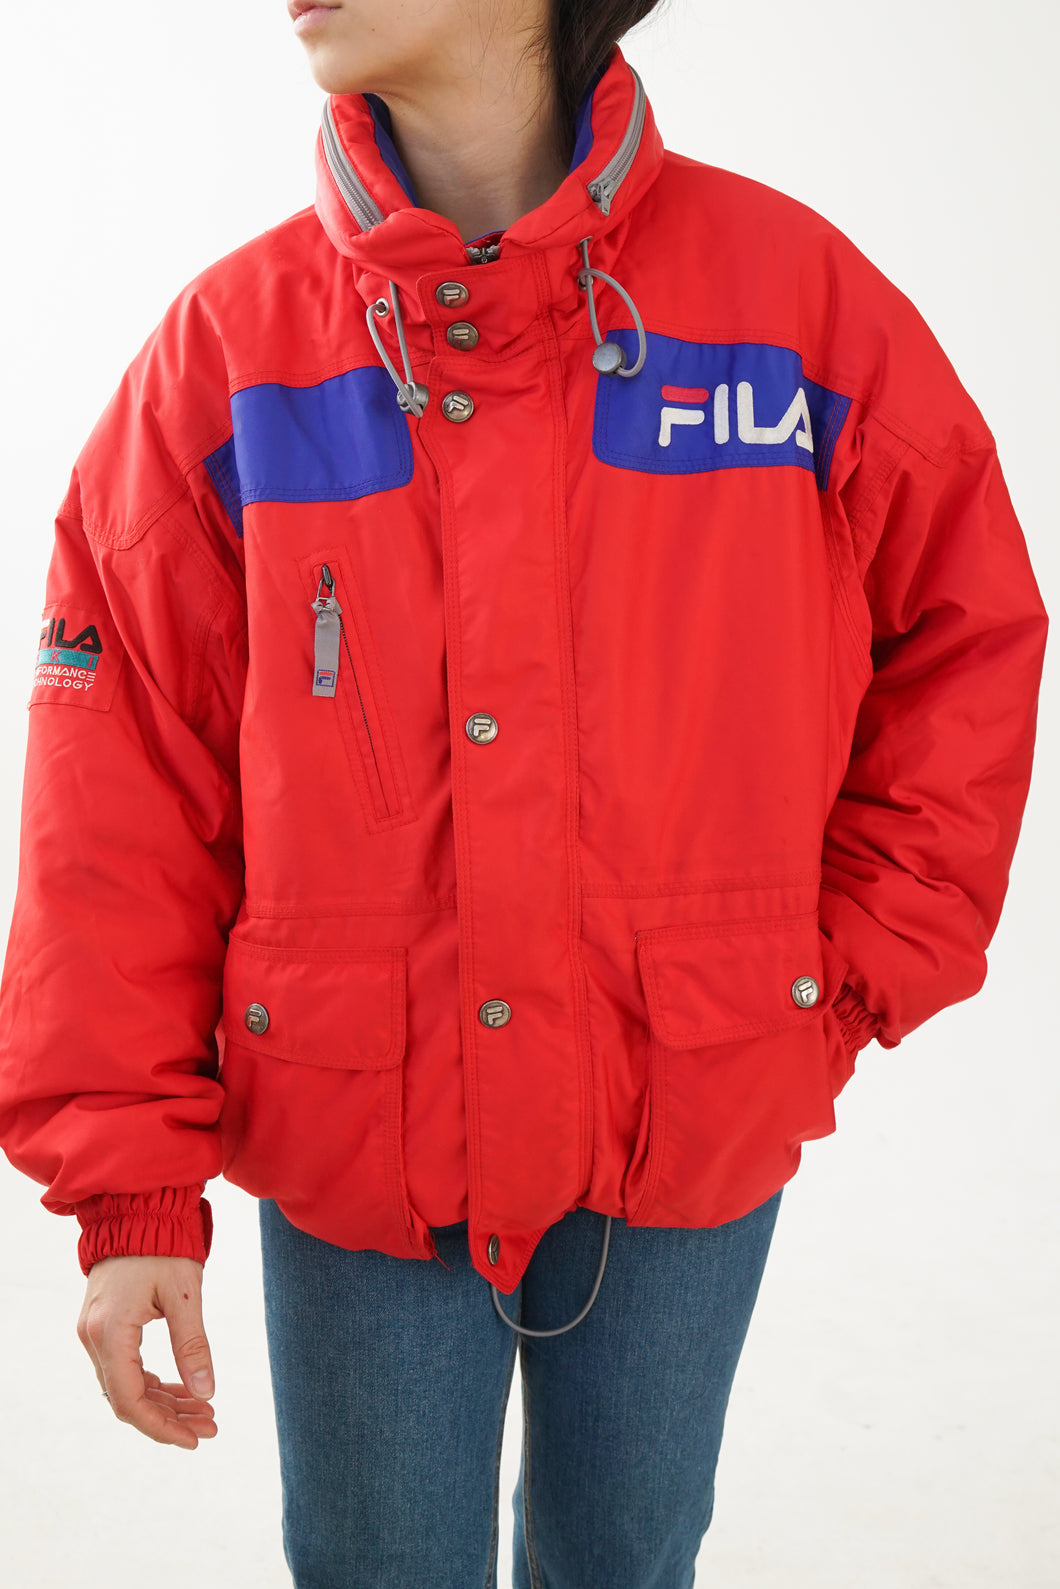 Vintage Fila ski jacket for men size S